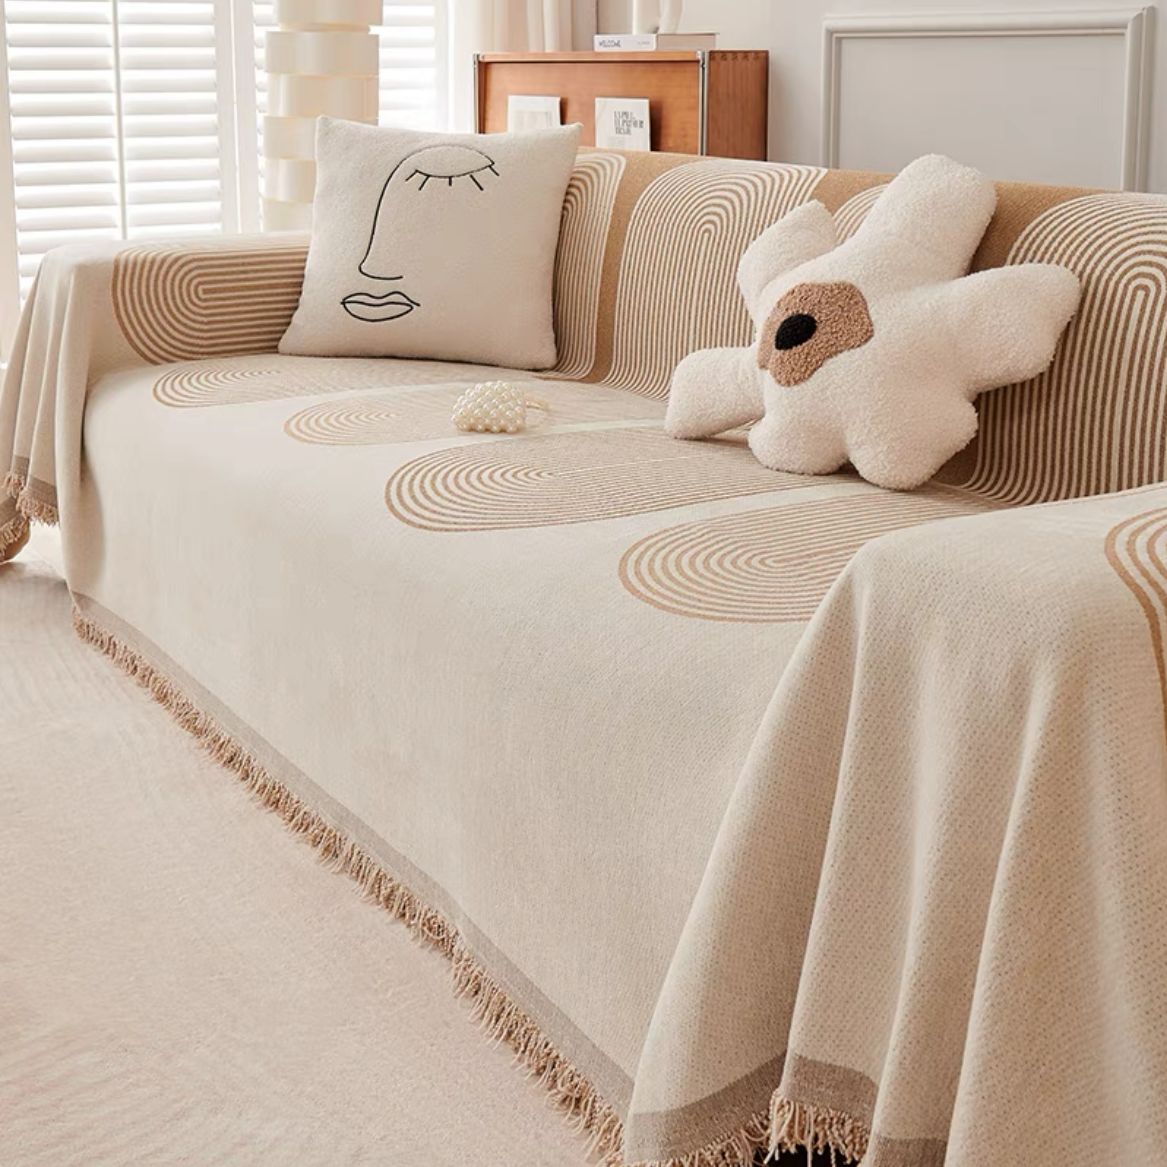 沙發套 沙發巾全蓋一片式萬能沙發套罩北歐客廳沙發蓋布毯四季通用沙發墊